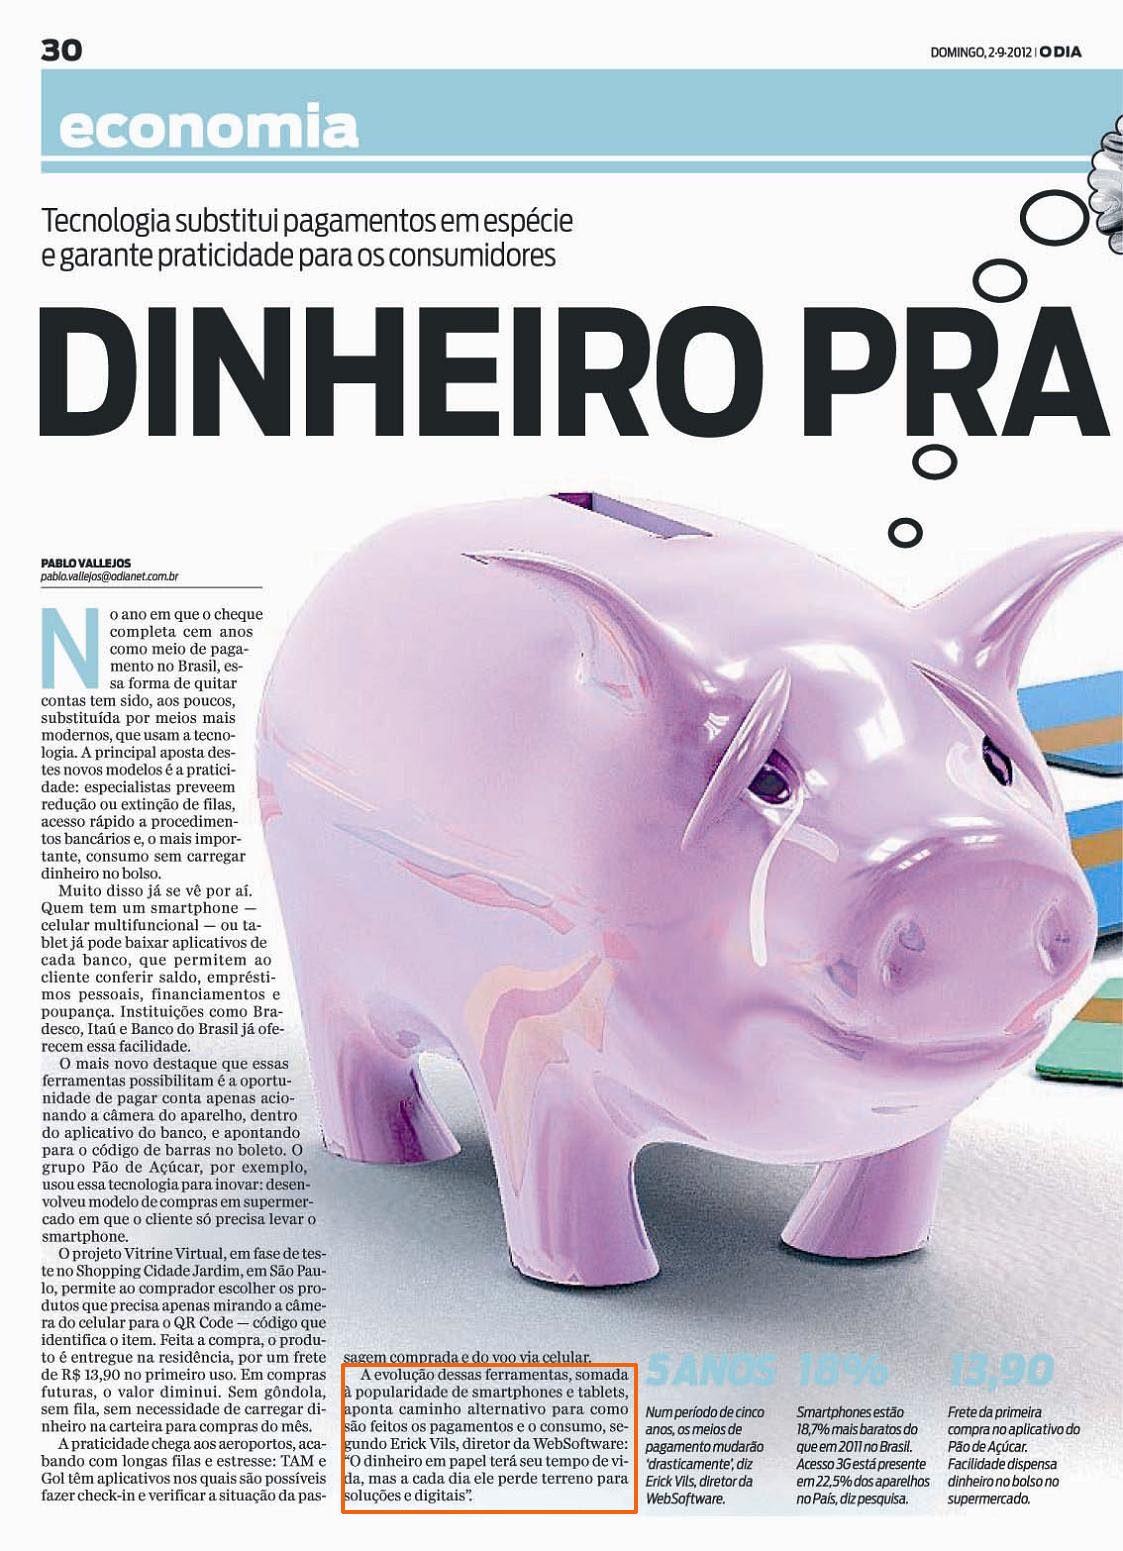 WebSoftware 02 de Setembro de 2012 - Jornal O Dia  - Economia 01.jpg